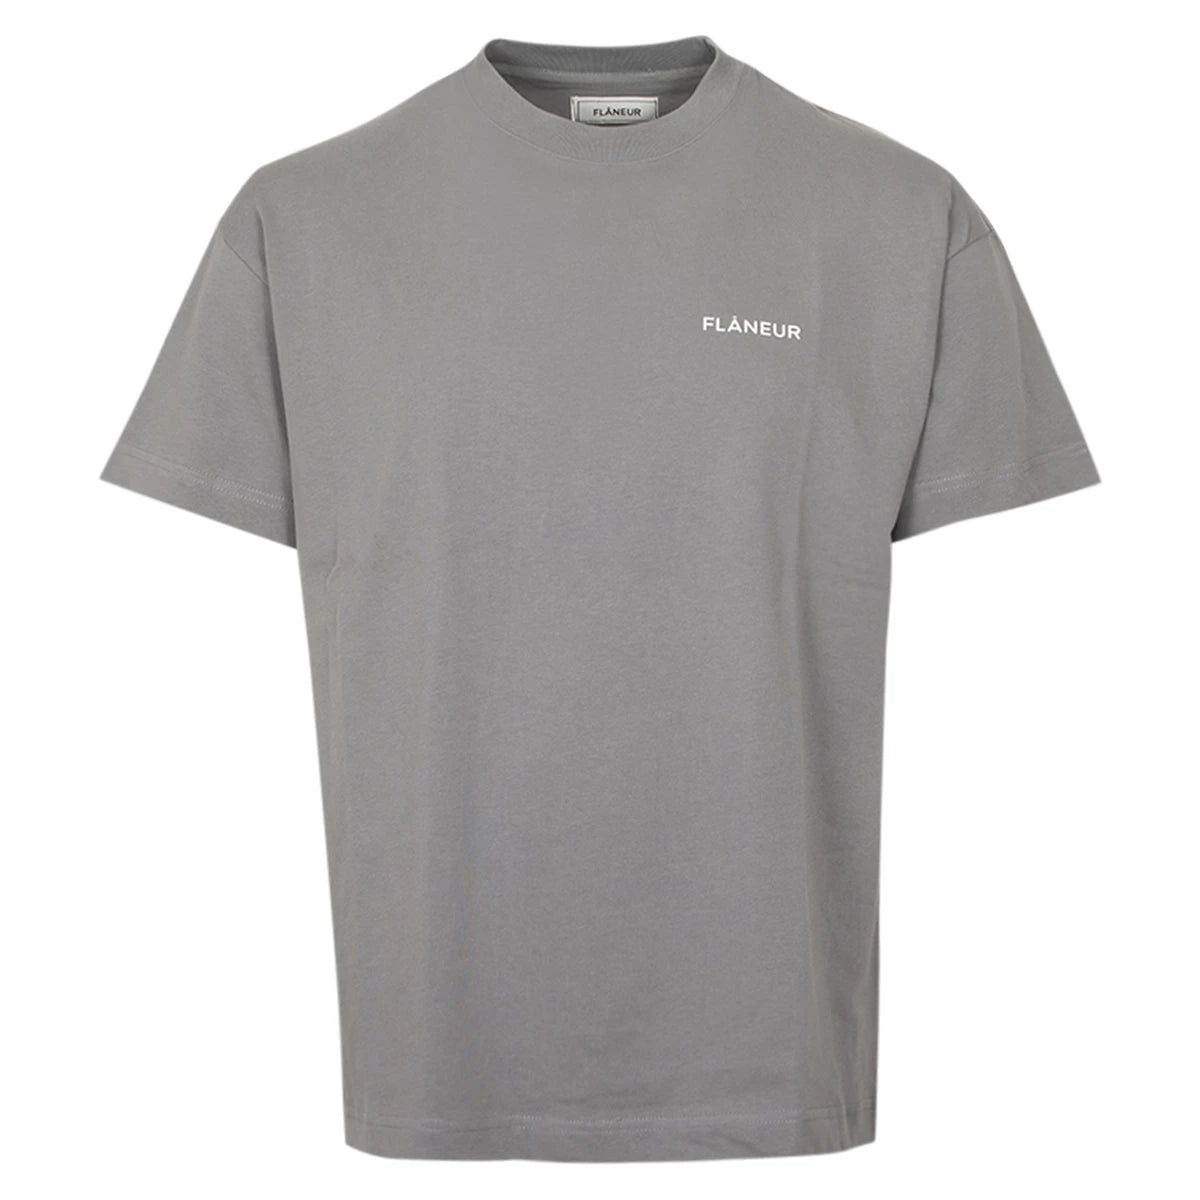 Flaneur T-shirt grijs | Essential shirt